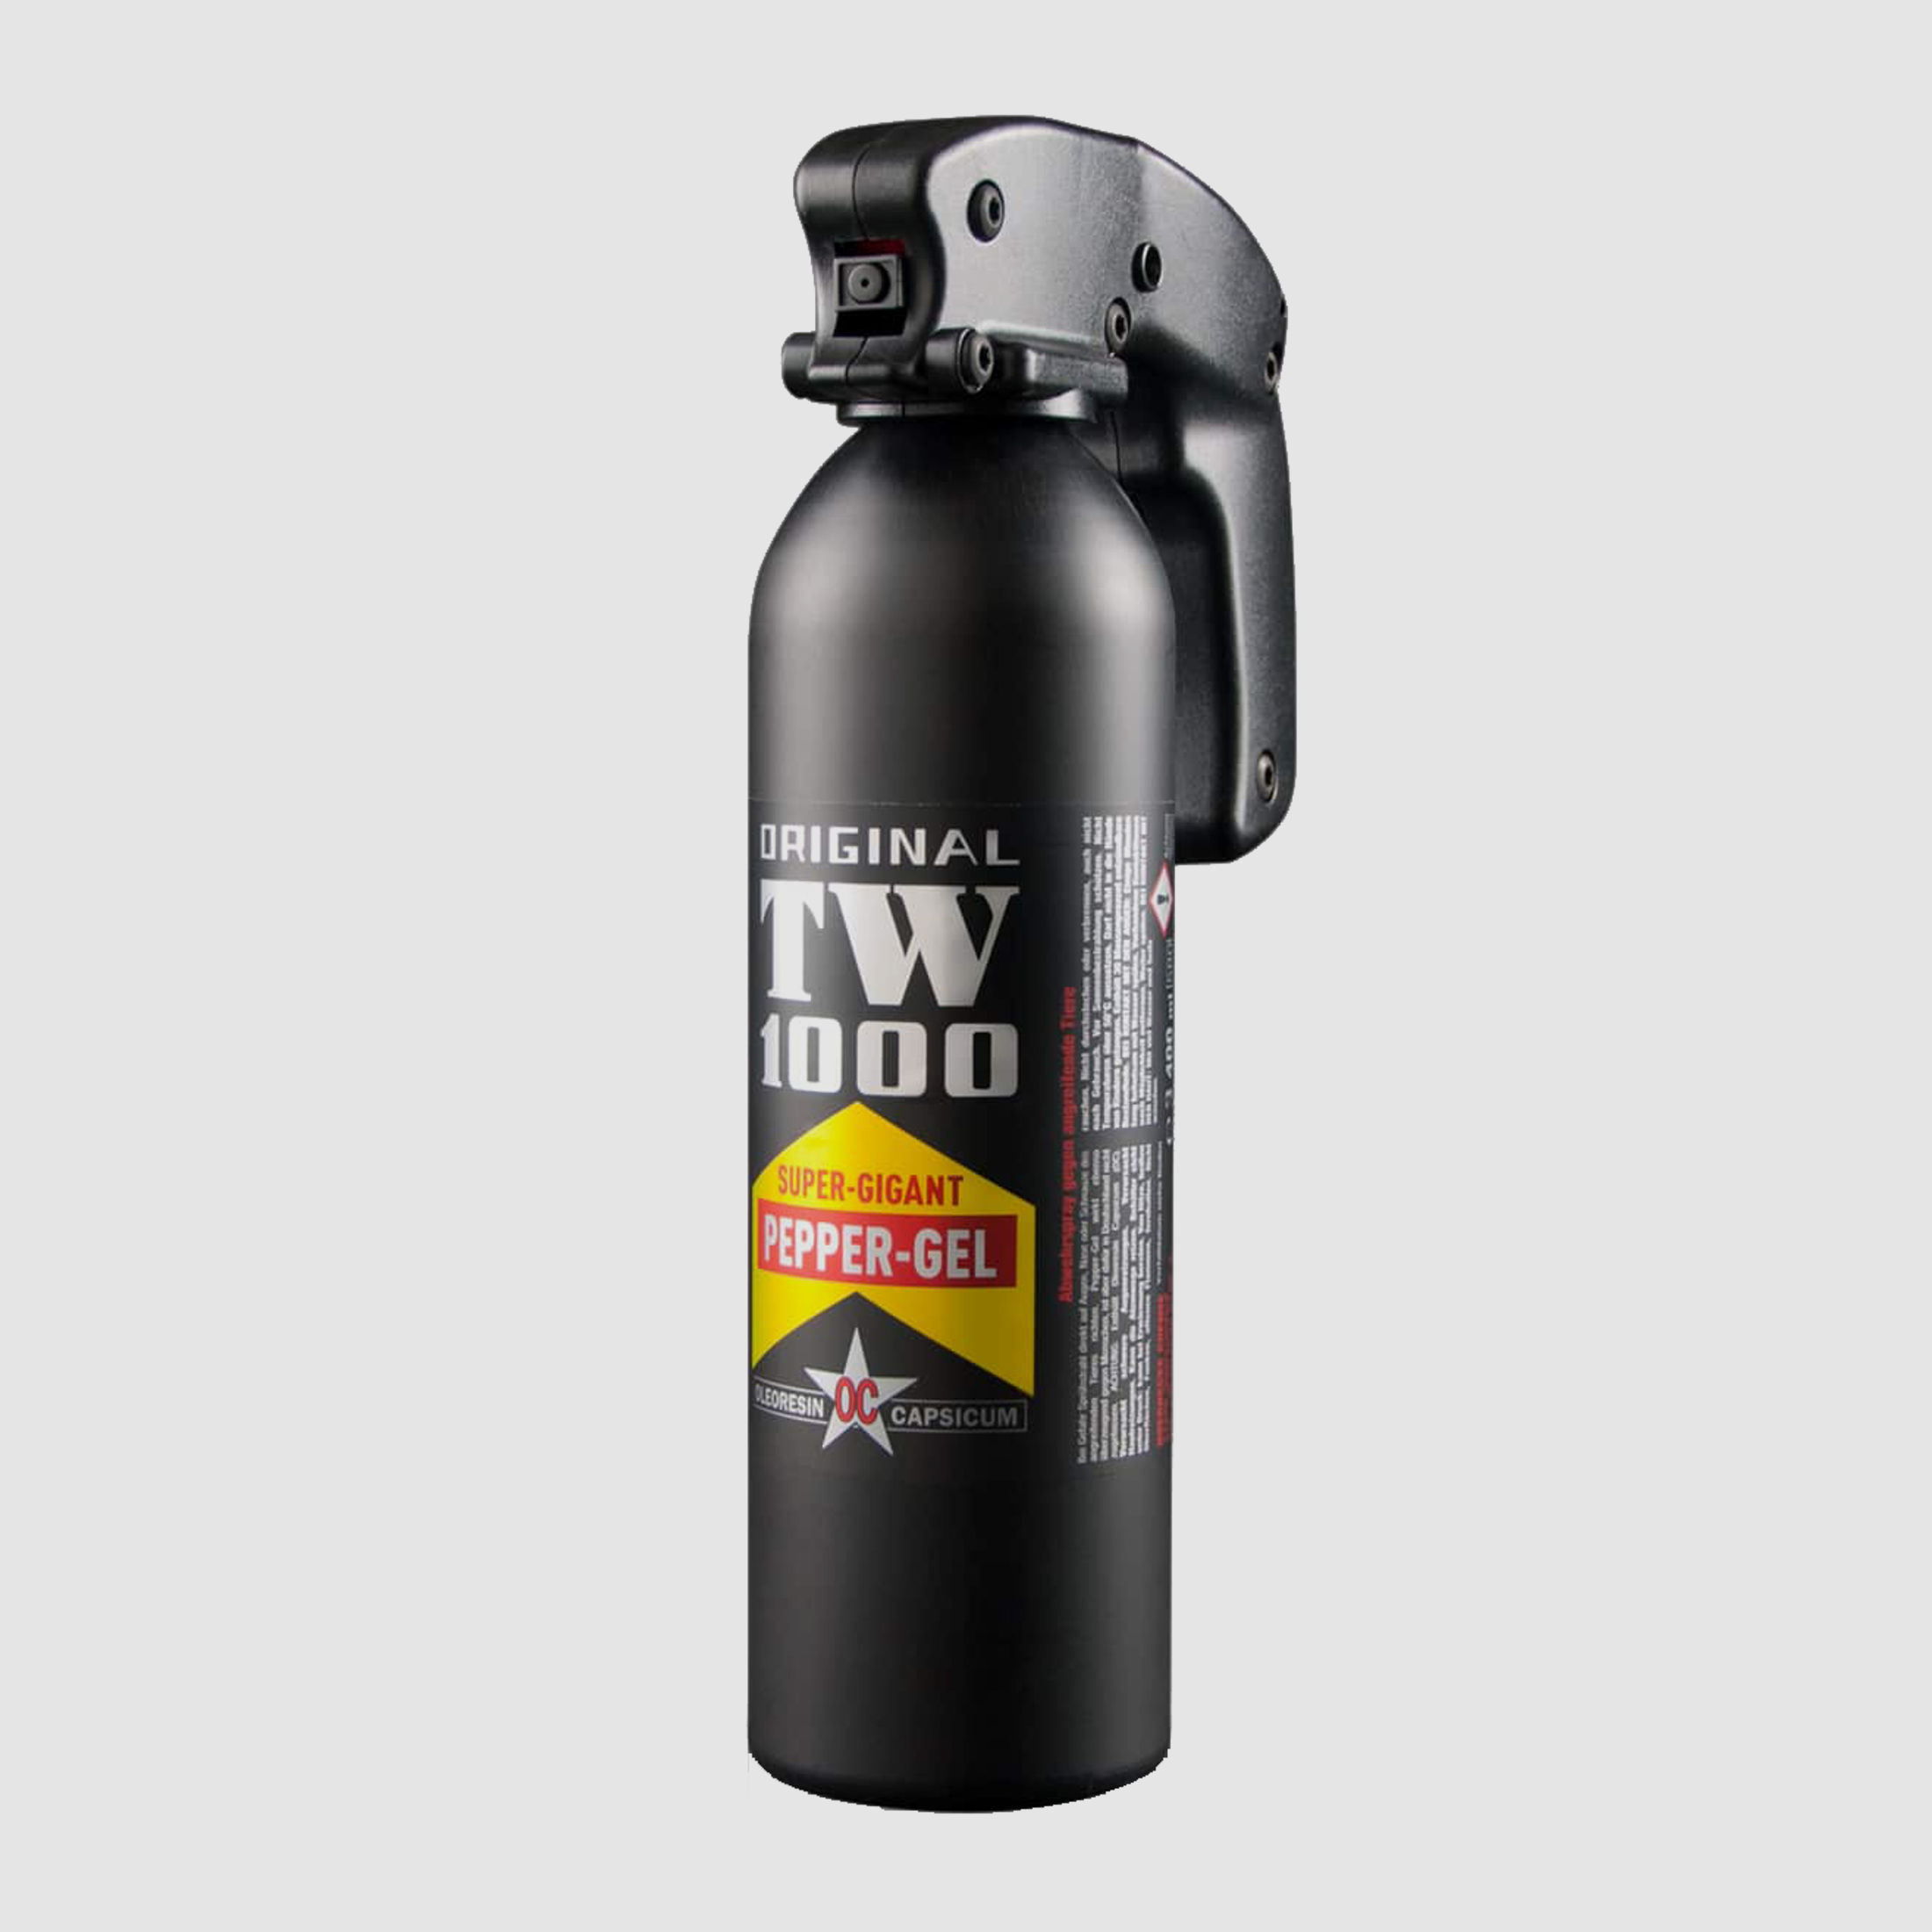 TW1000 Pepper-Gel 400ml